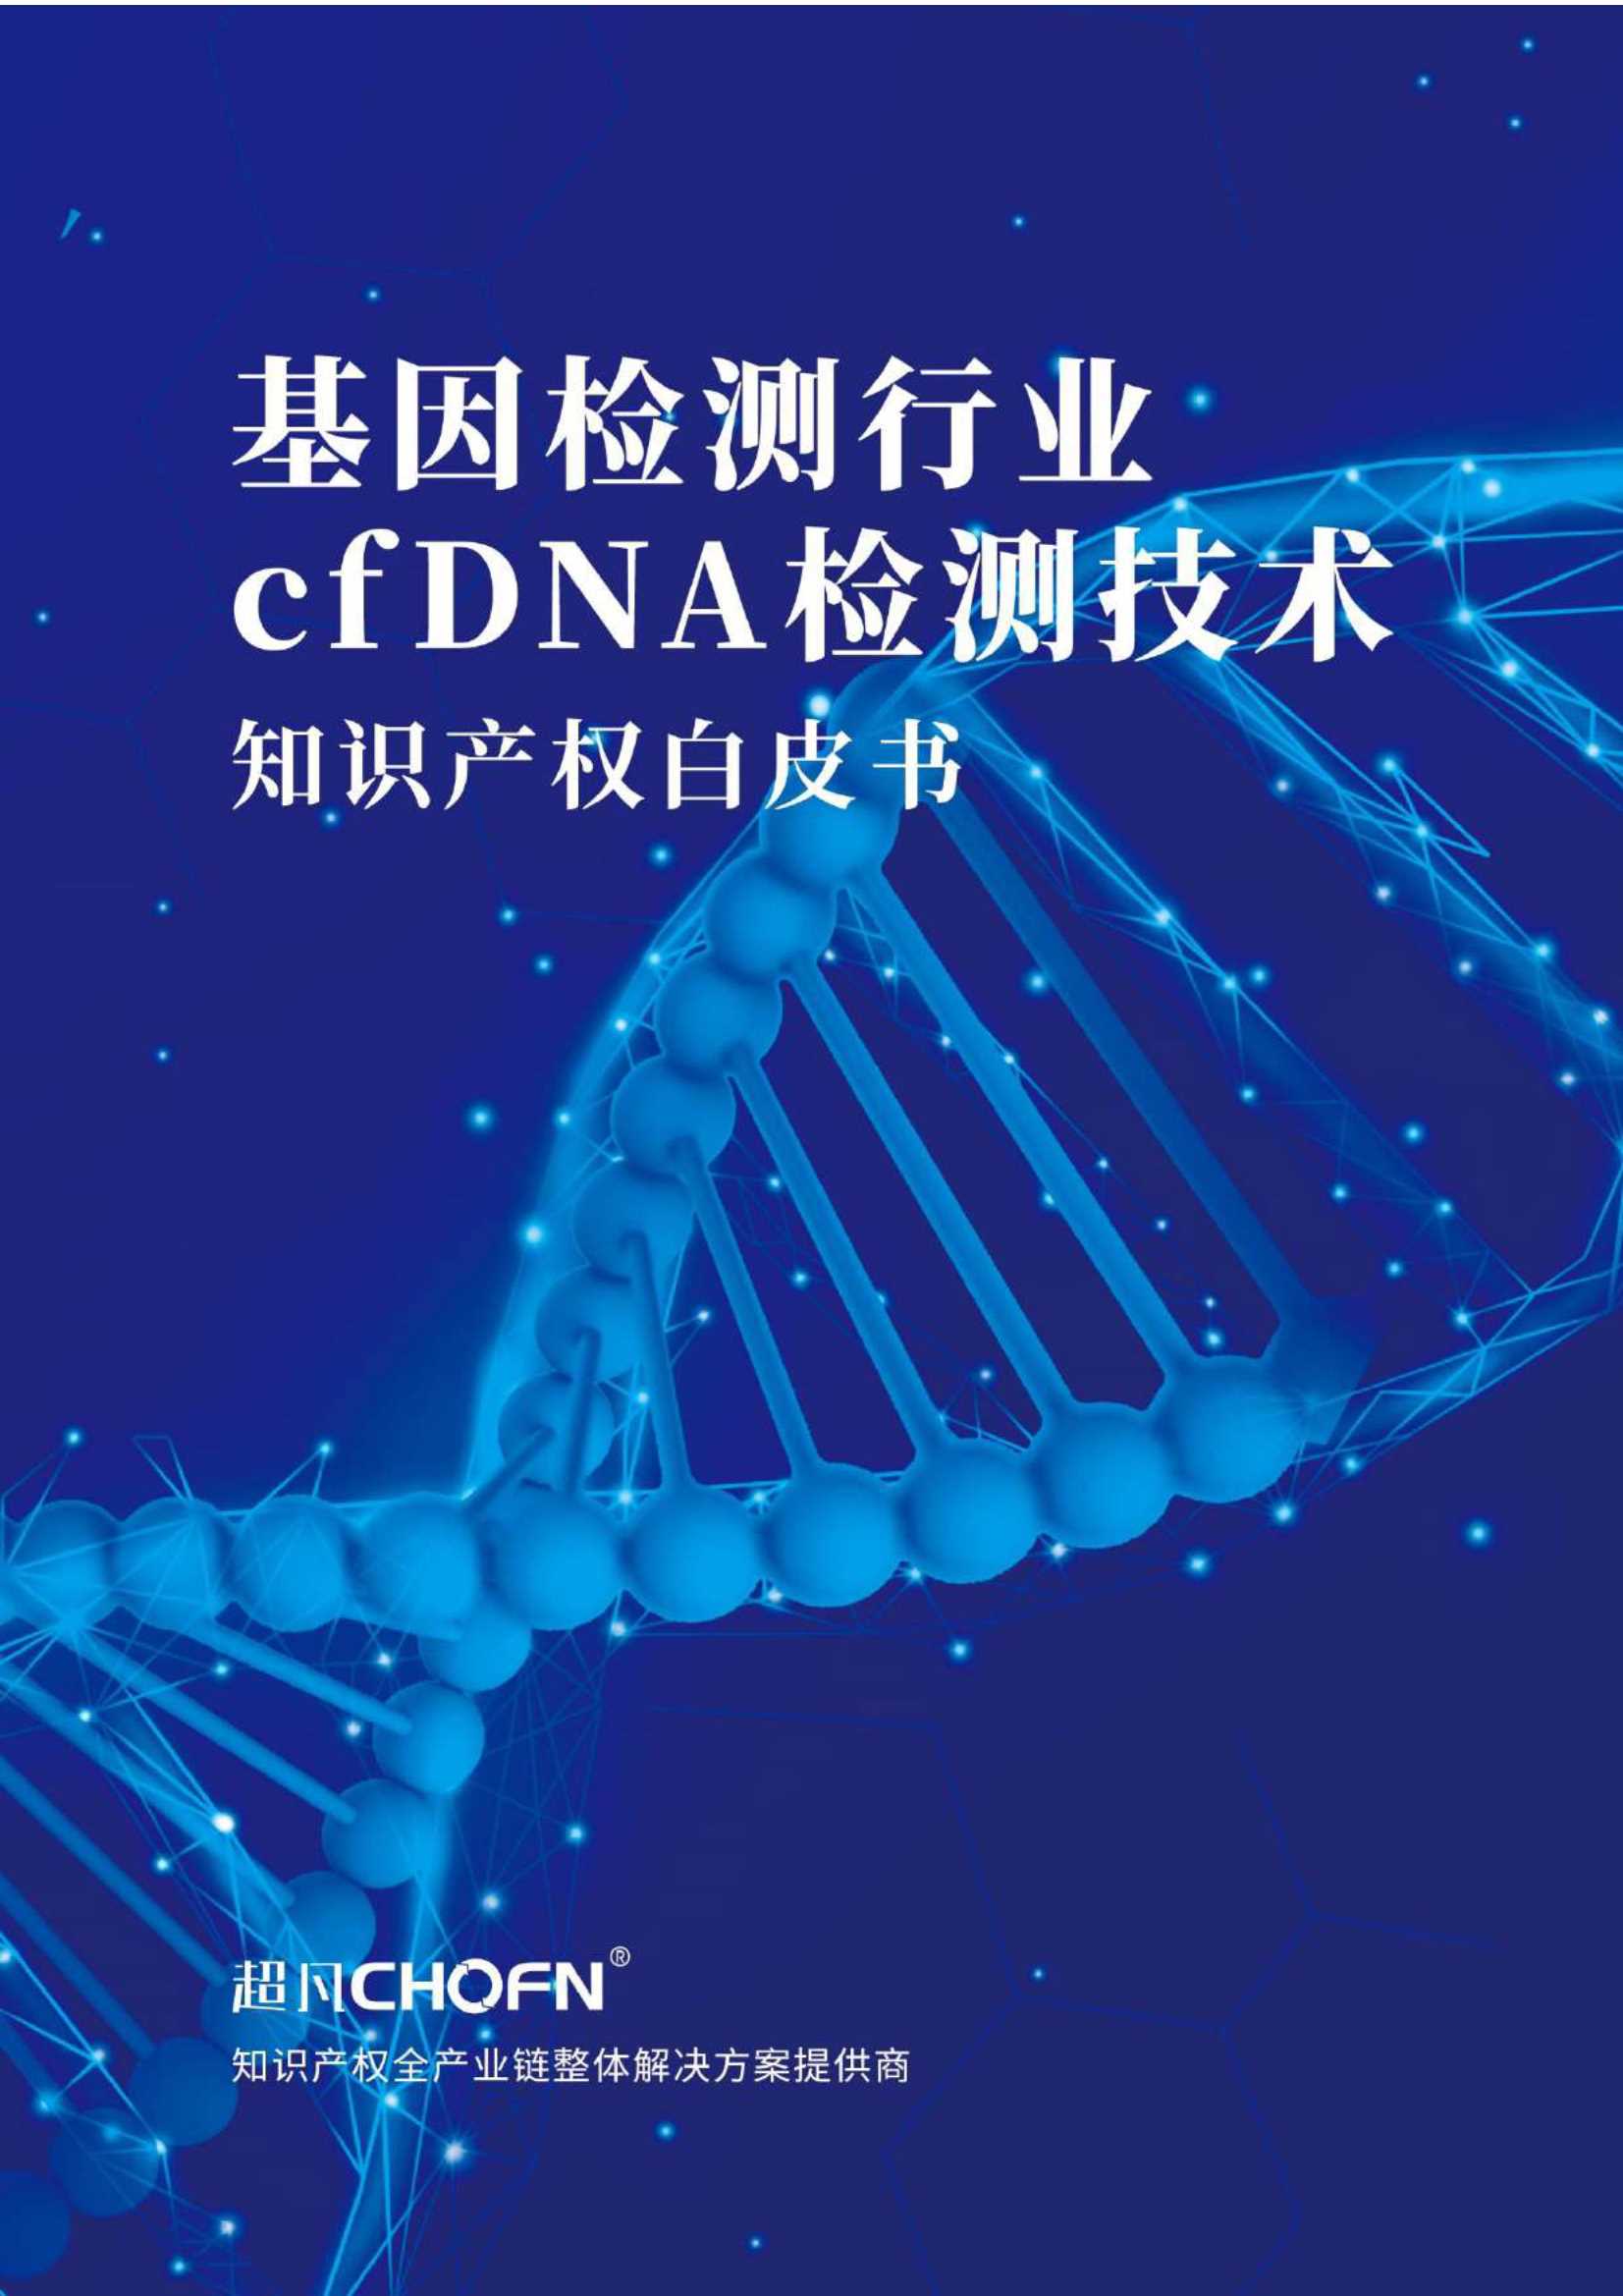 超凡-基因检测行业cfDNA检测技术知识产权白皮书-2021.06-48页